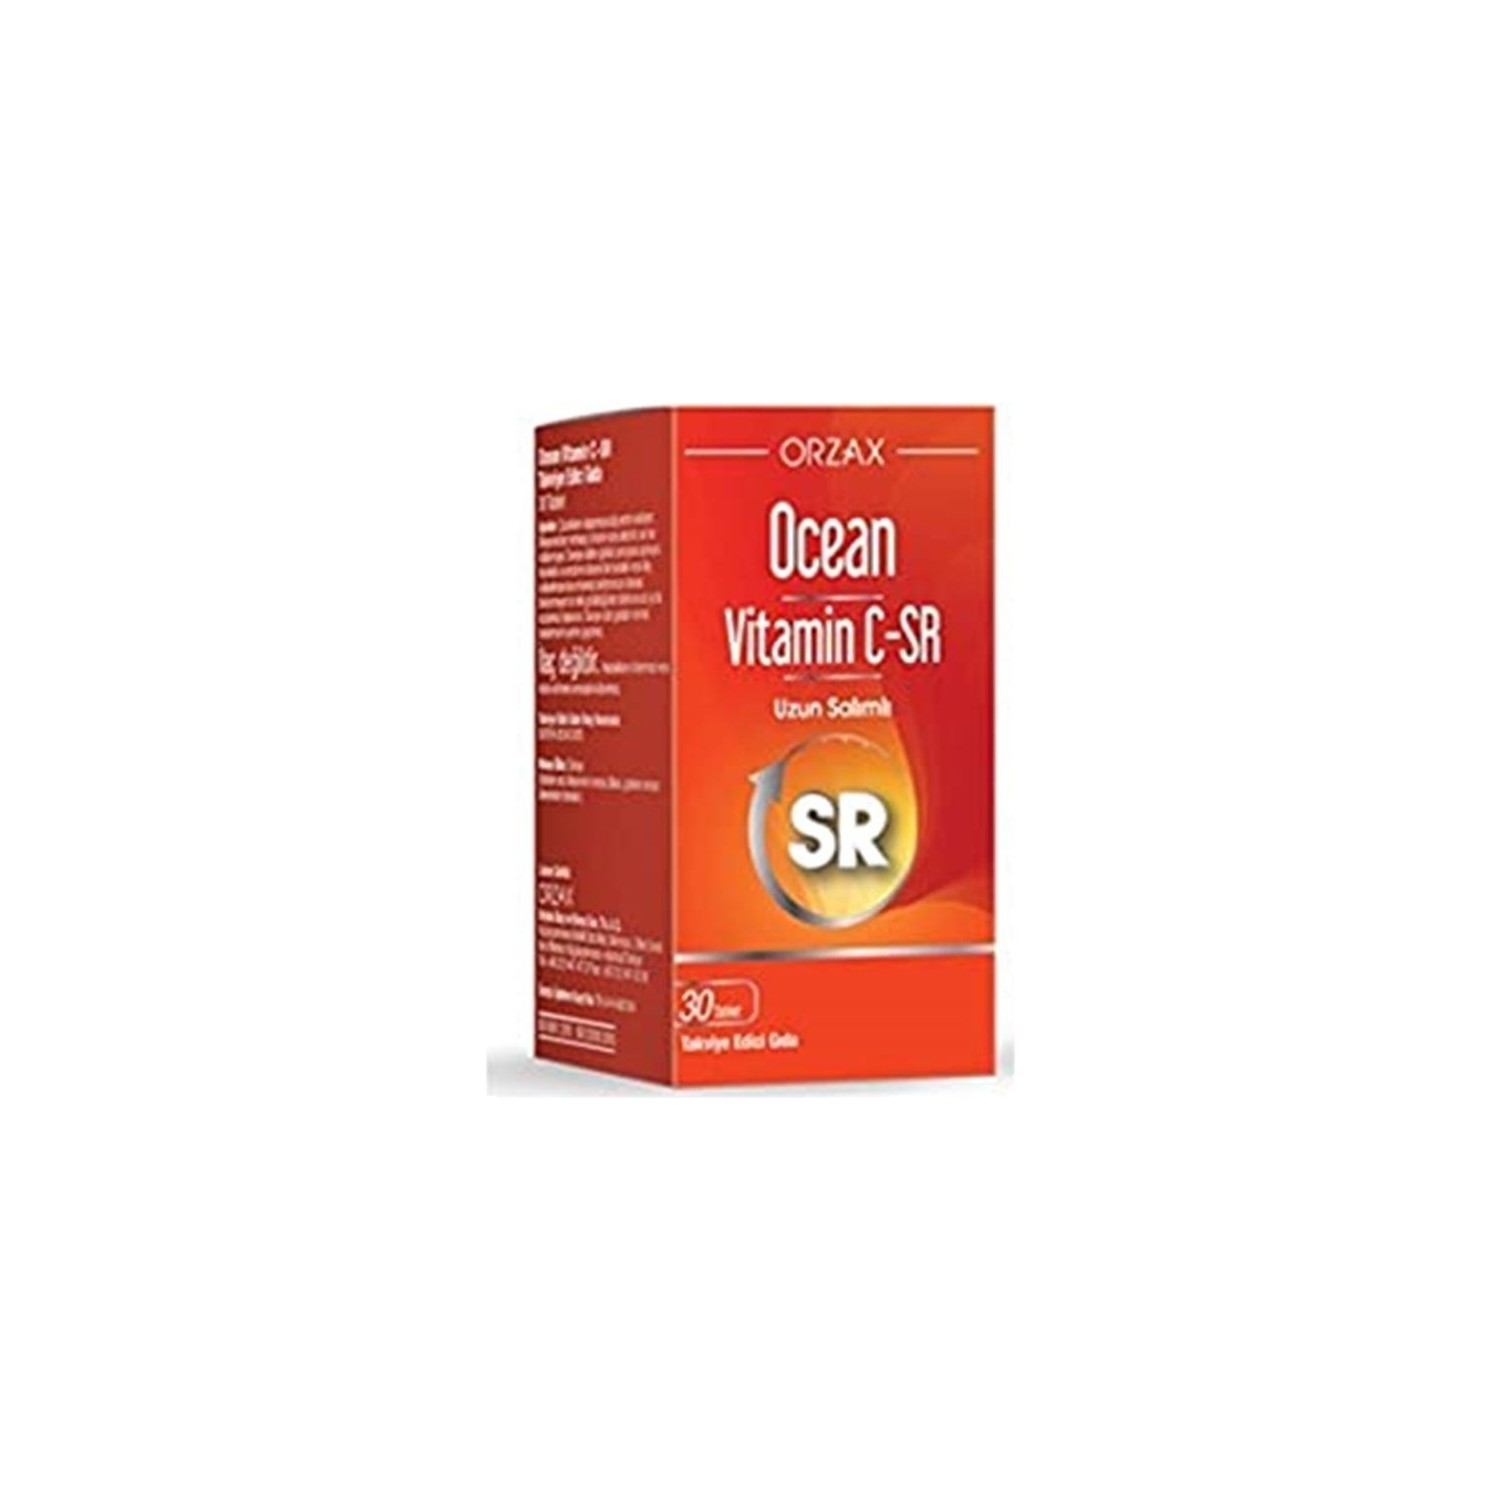 цена Витамин C-Sr Ocean, 30 таблеток